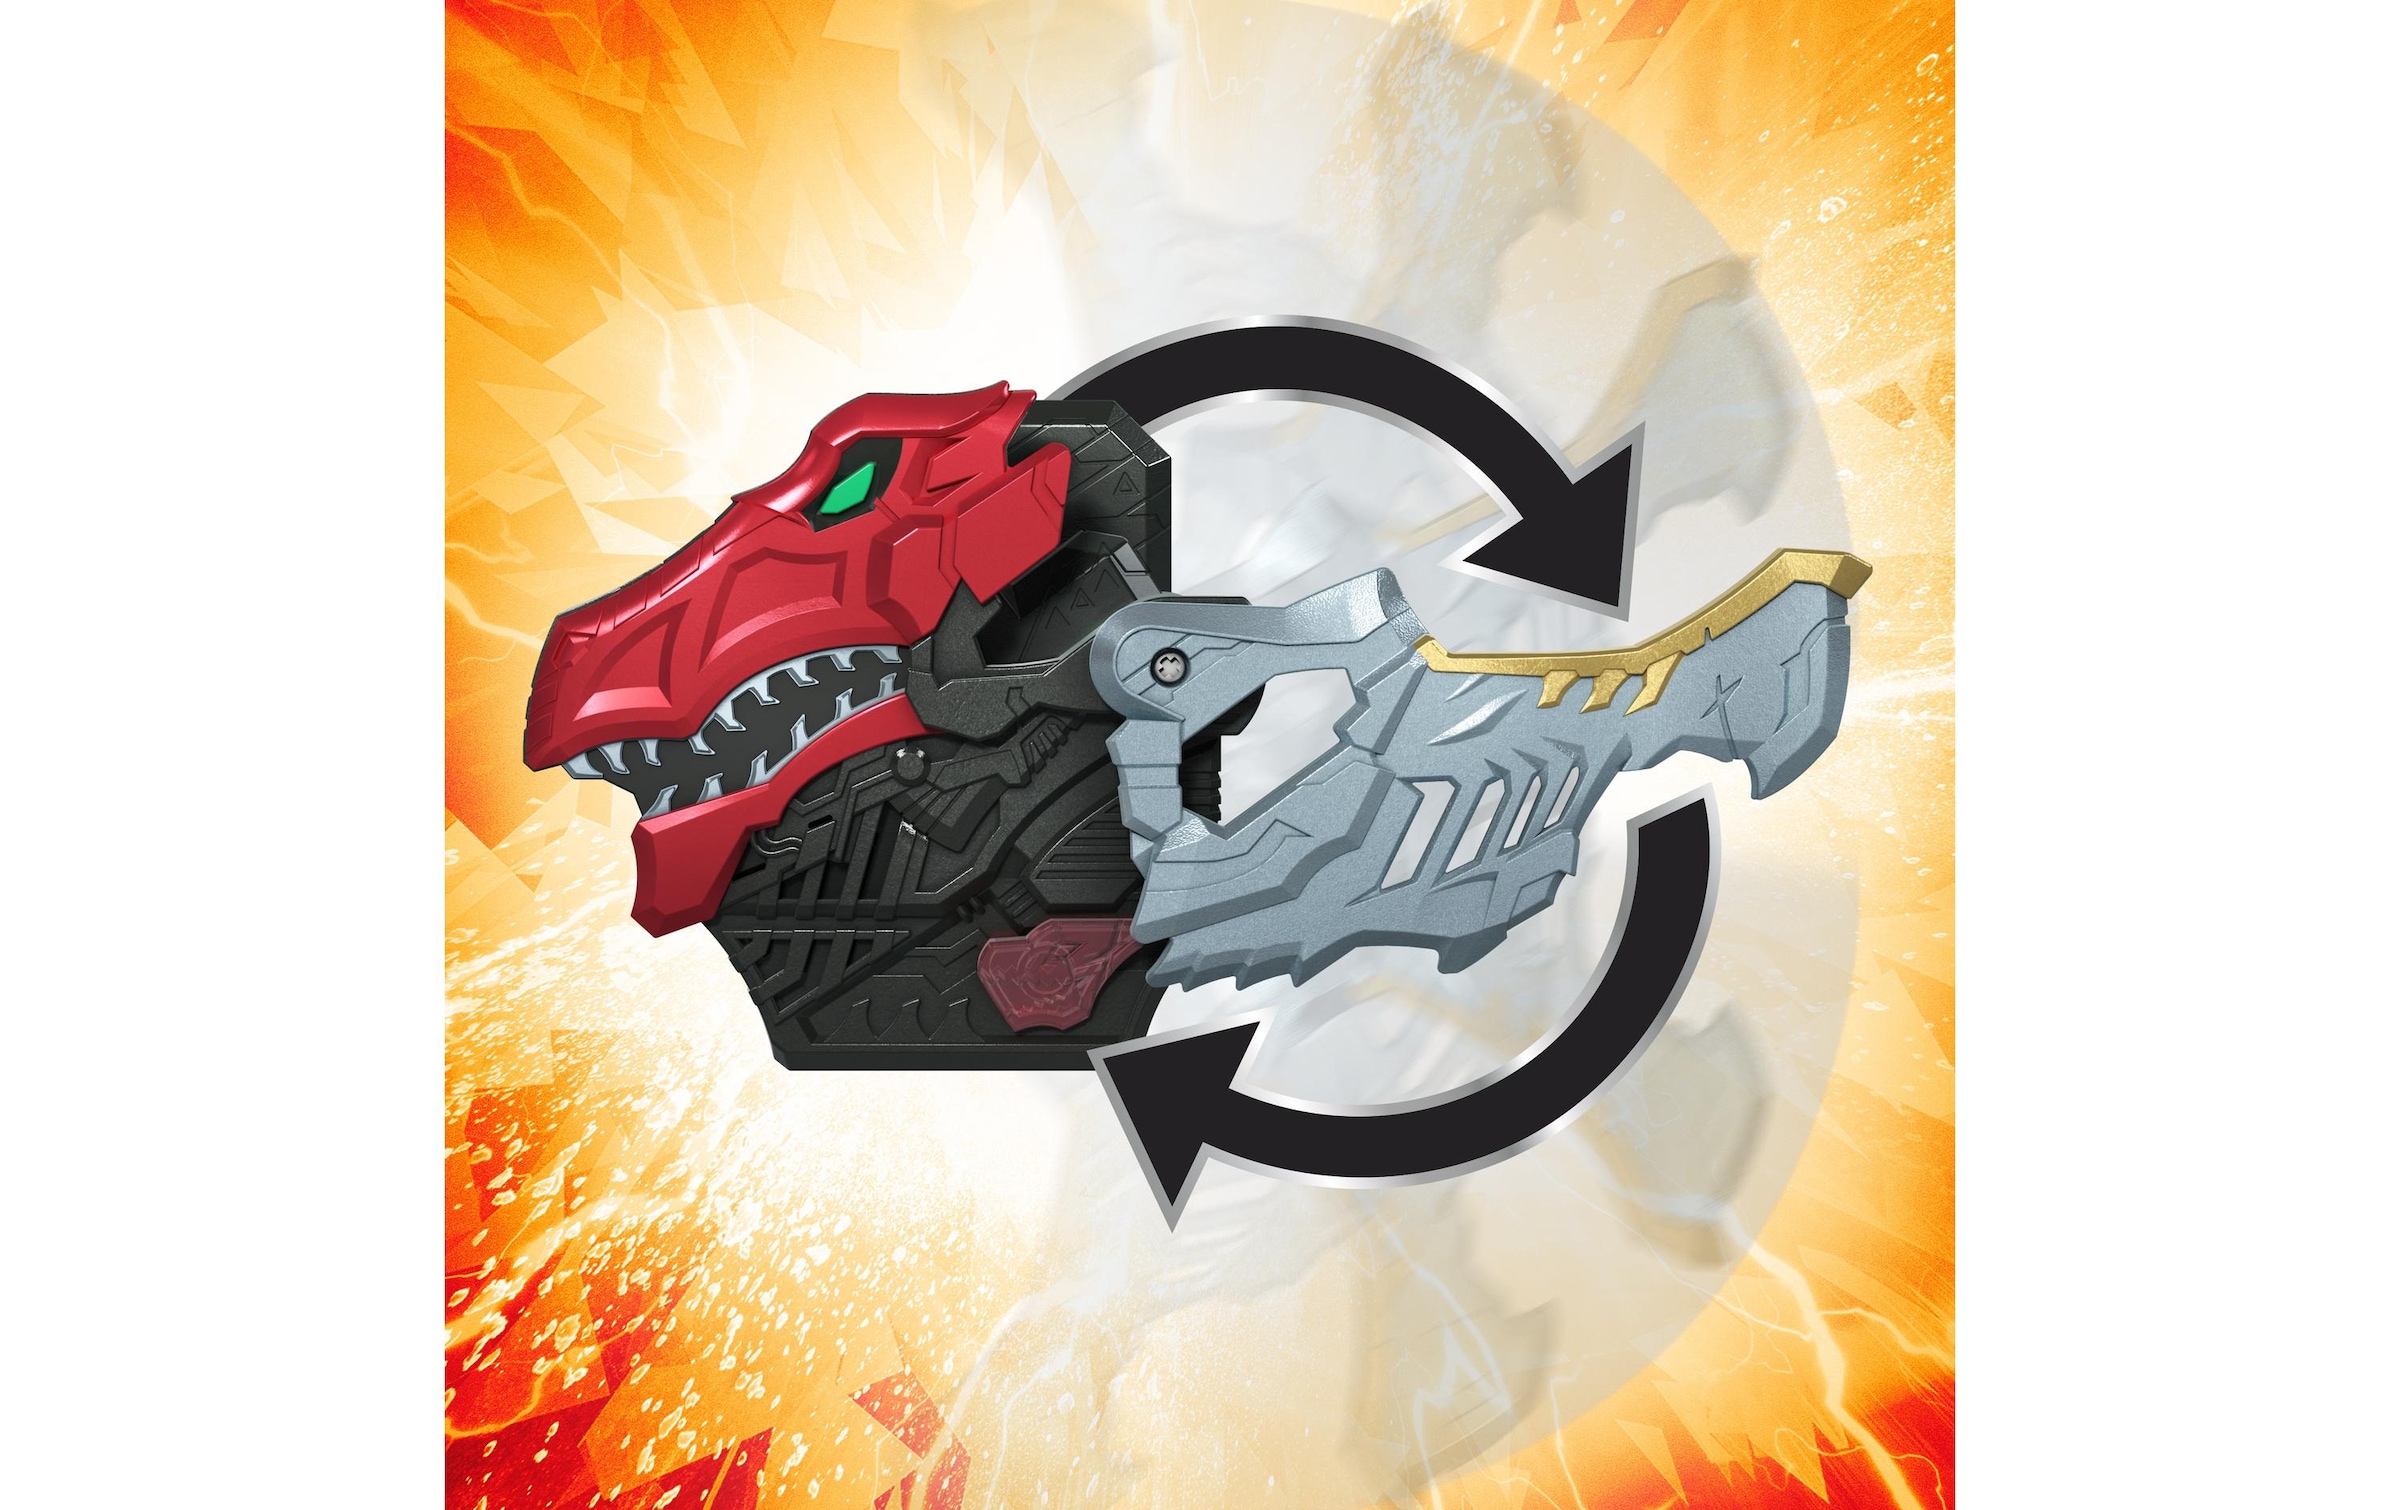 Hasbro Actionfigur »Rangers Dino Fury«